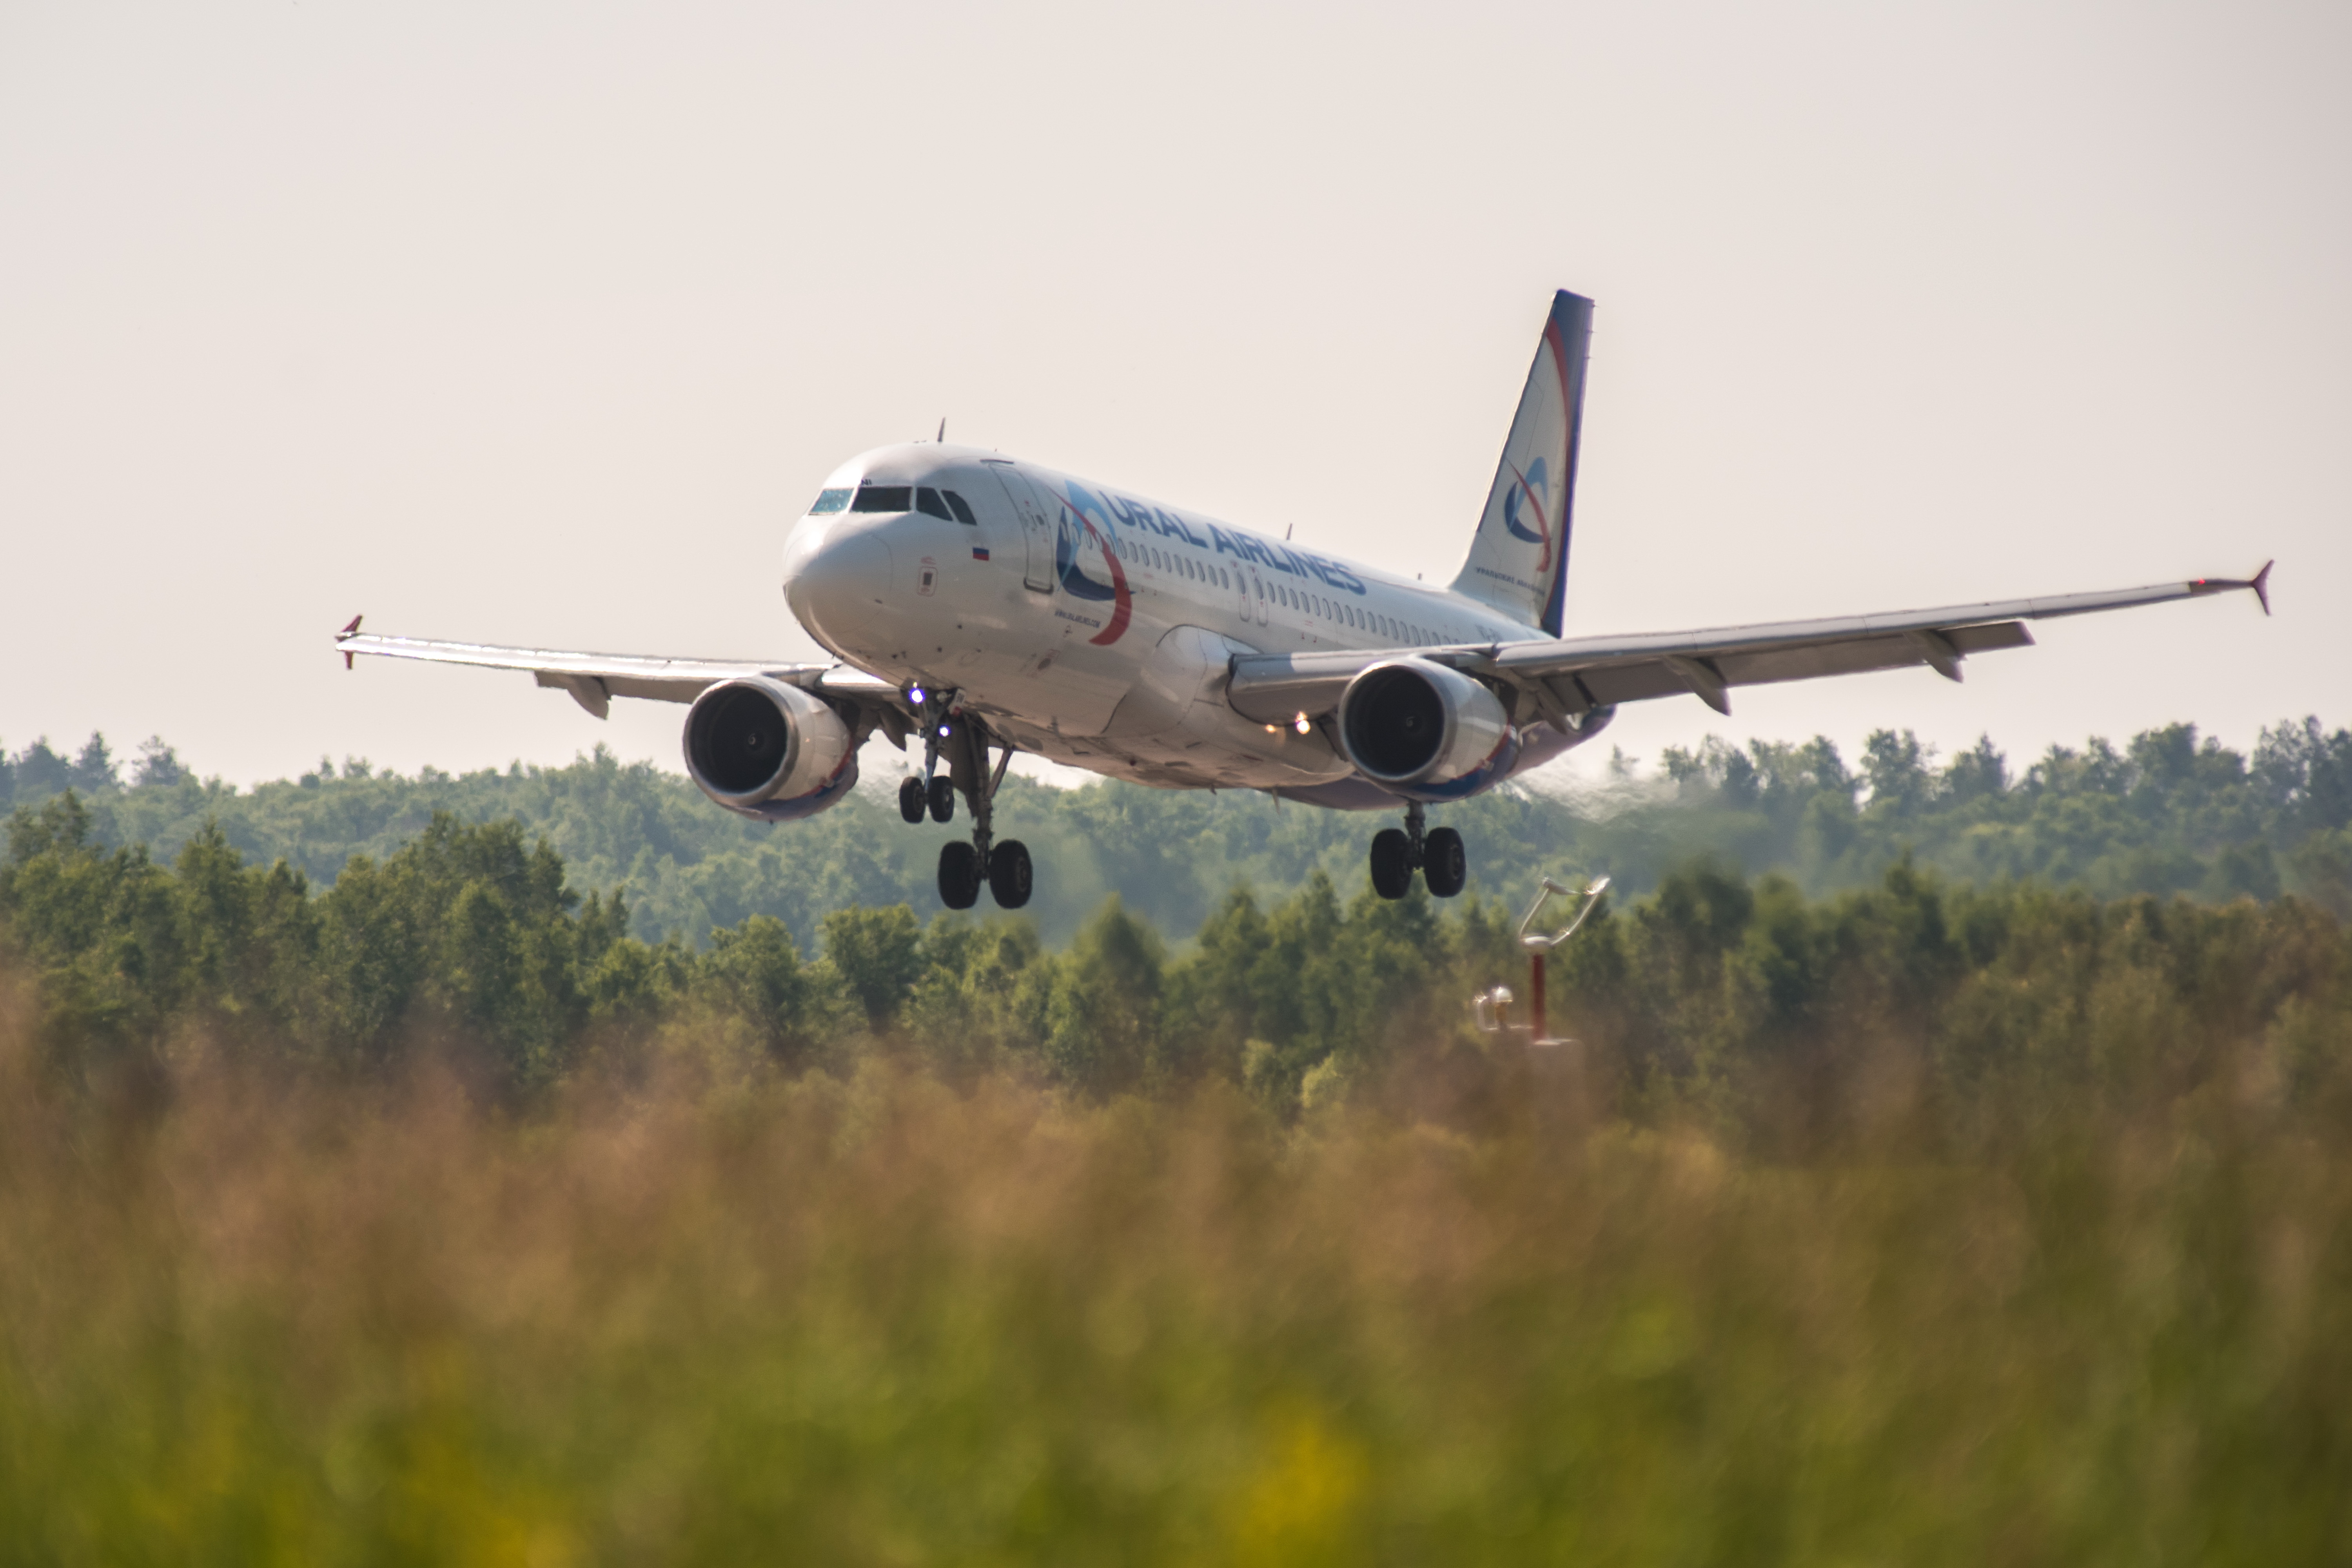 Еще один рейс в Москву из аэропорта Благовещенска запустят на следующей неделе / С 25 апреля авиакомпания «Уральские авиалинии» планирует приступить к беспересадочным полетам по маршруту Благовещенск — Москва. Рейсы будут выполняться на авиалайнере Airbus A320neo ежедневно.